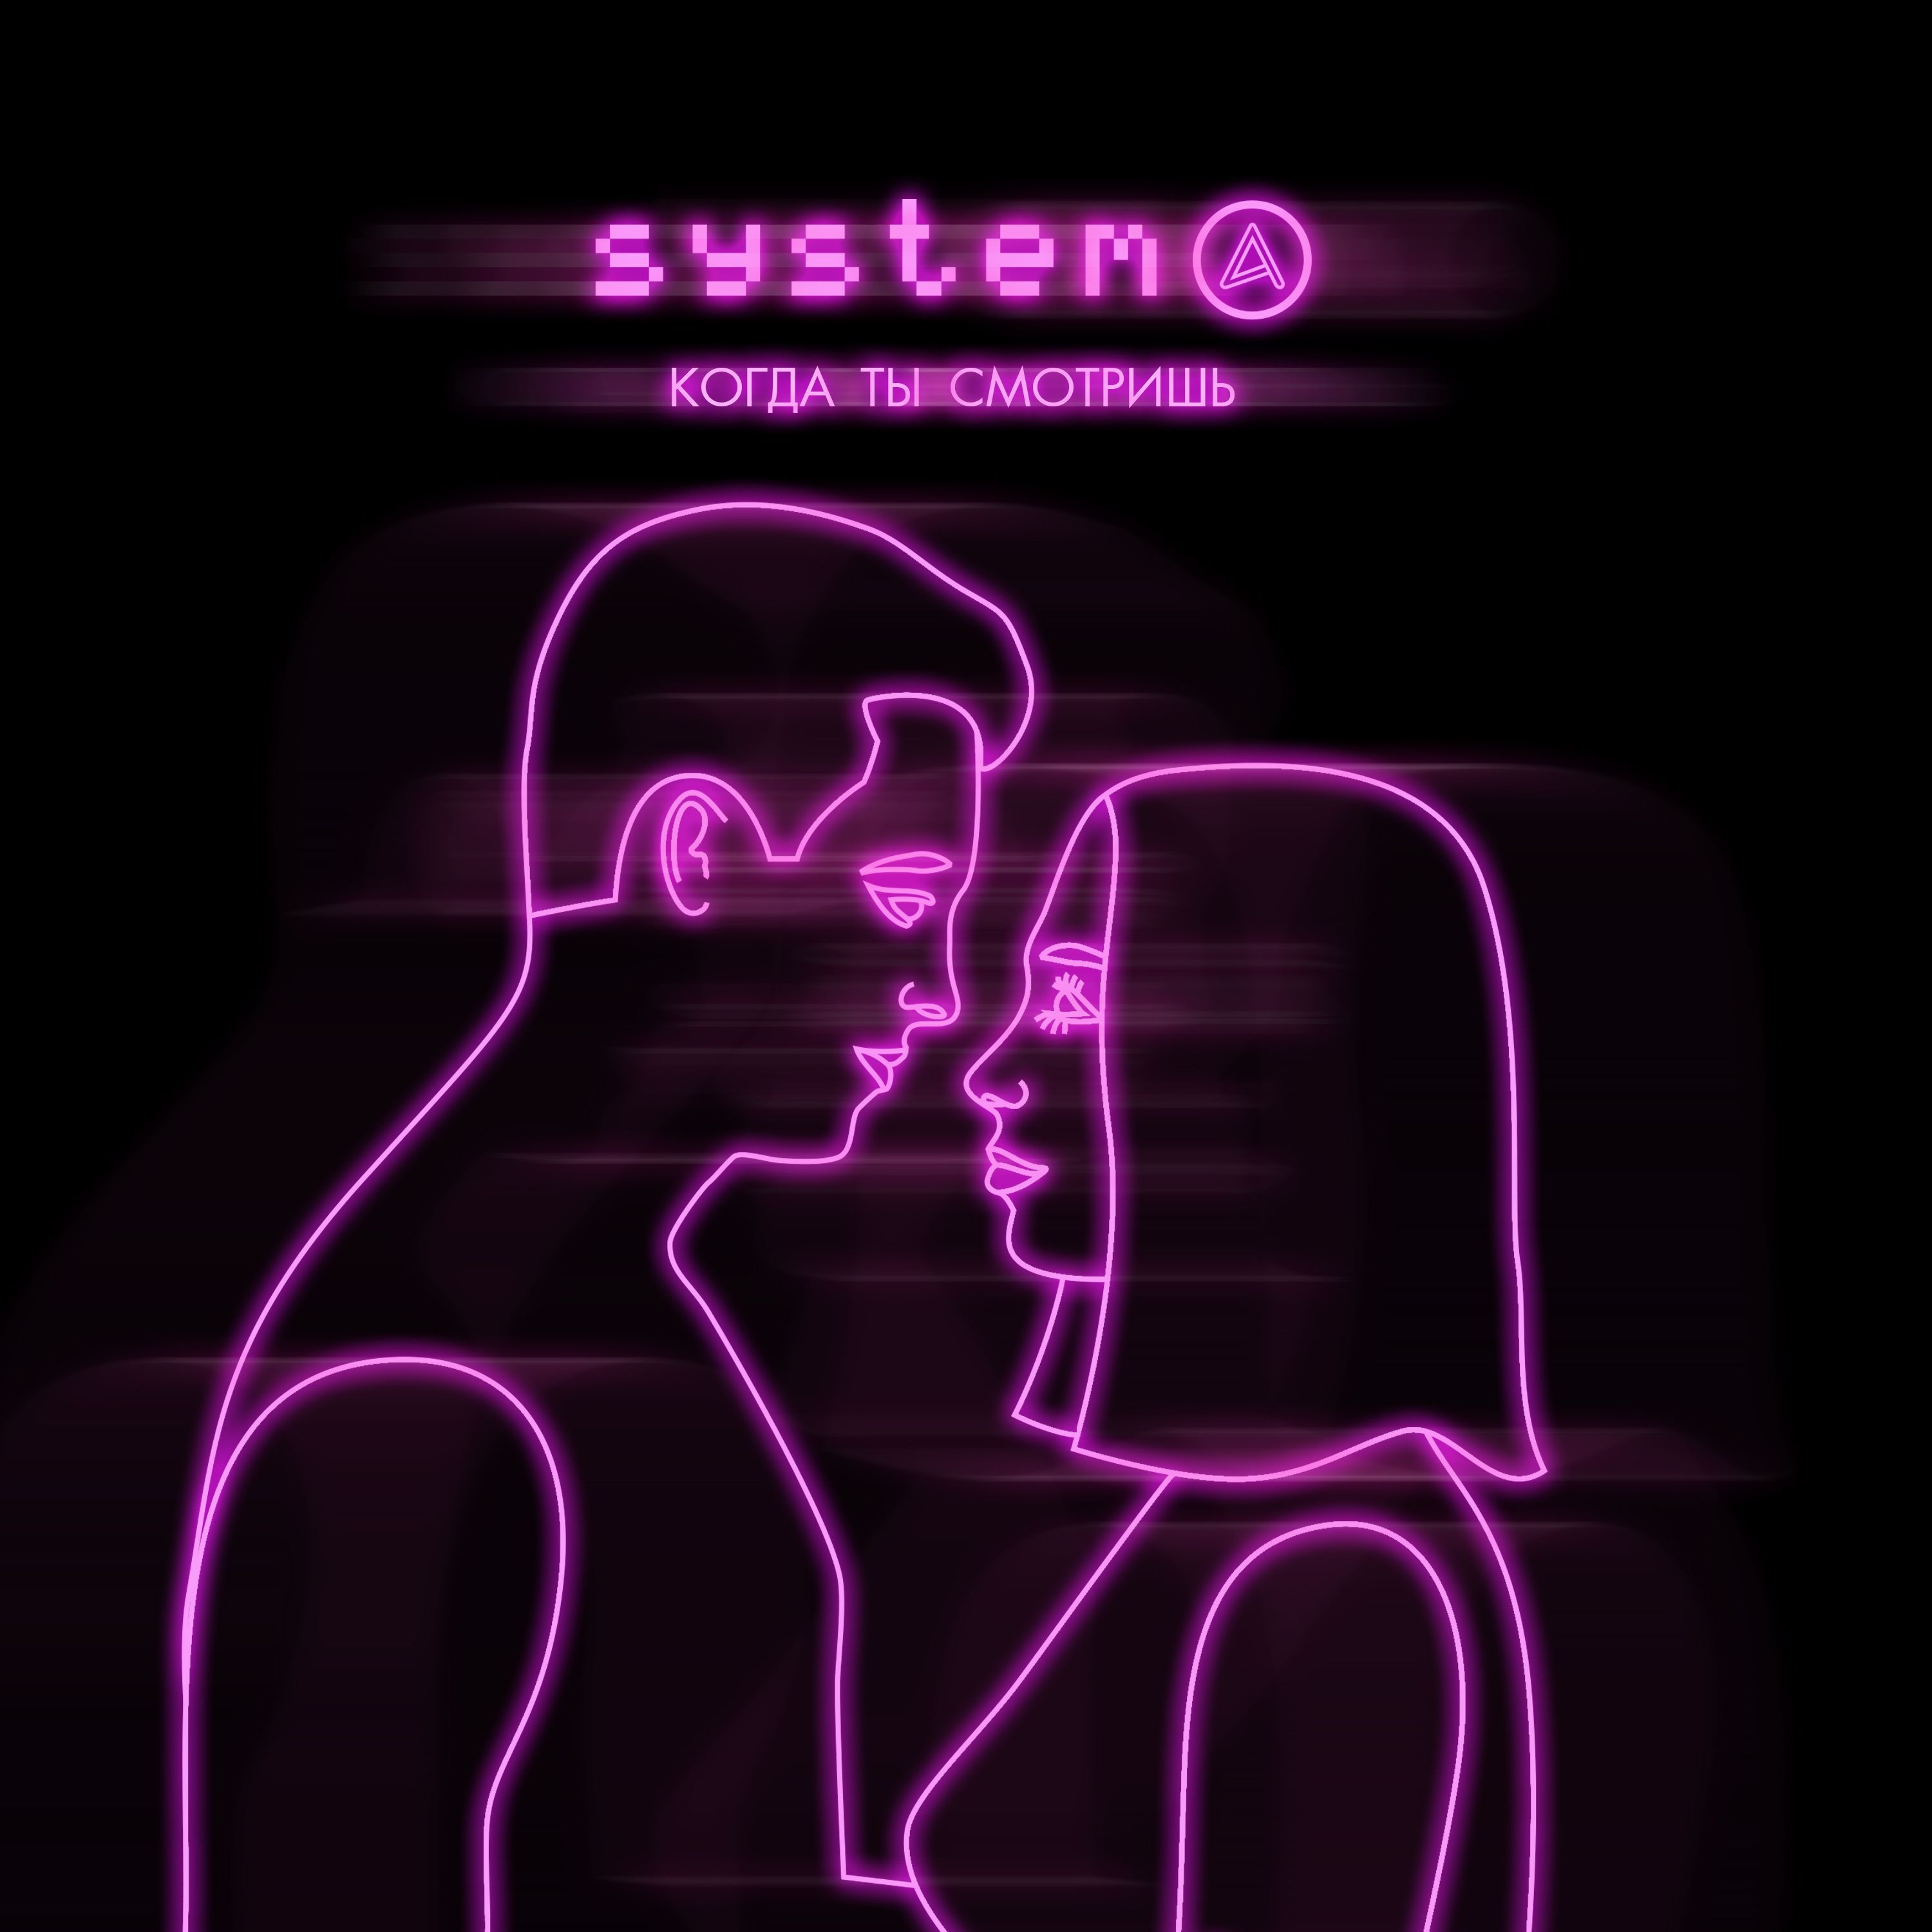 Скачать Systema - Когда ты смотришь